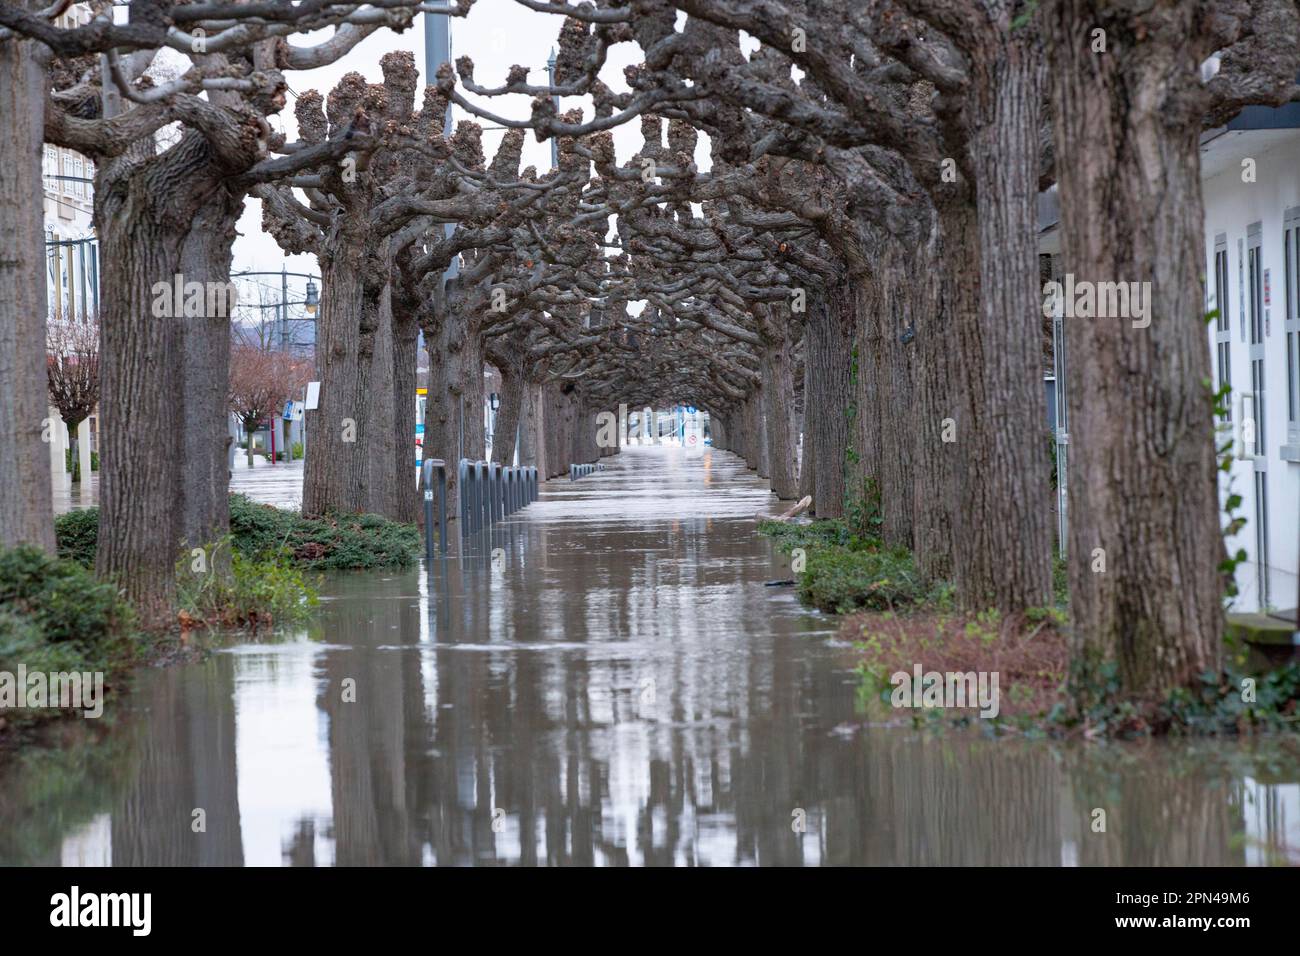 Das erste Jahreshochwasser am Rhein nahe des Pegelhöchstandes. Königswinter, 04.02.2021 Stock Photo